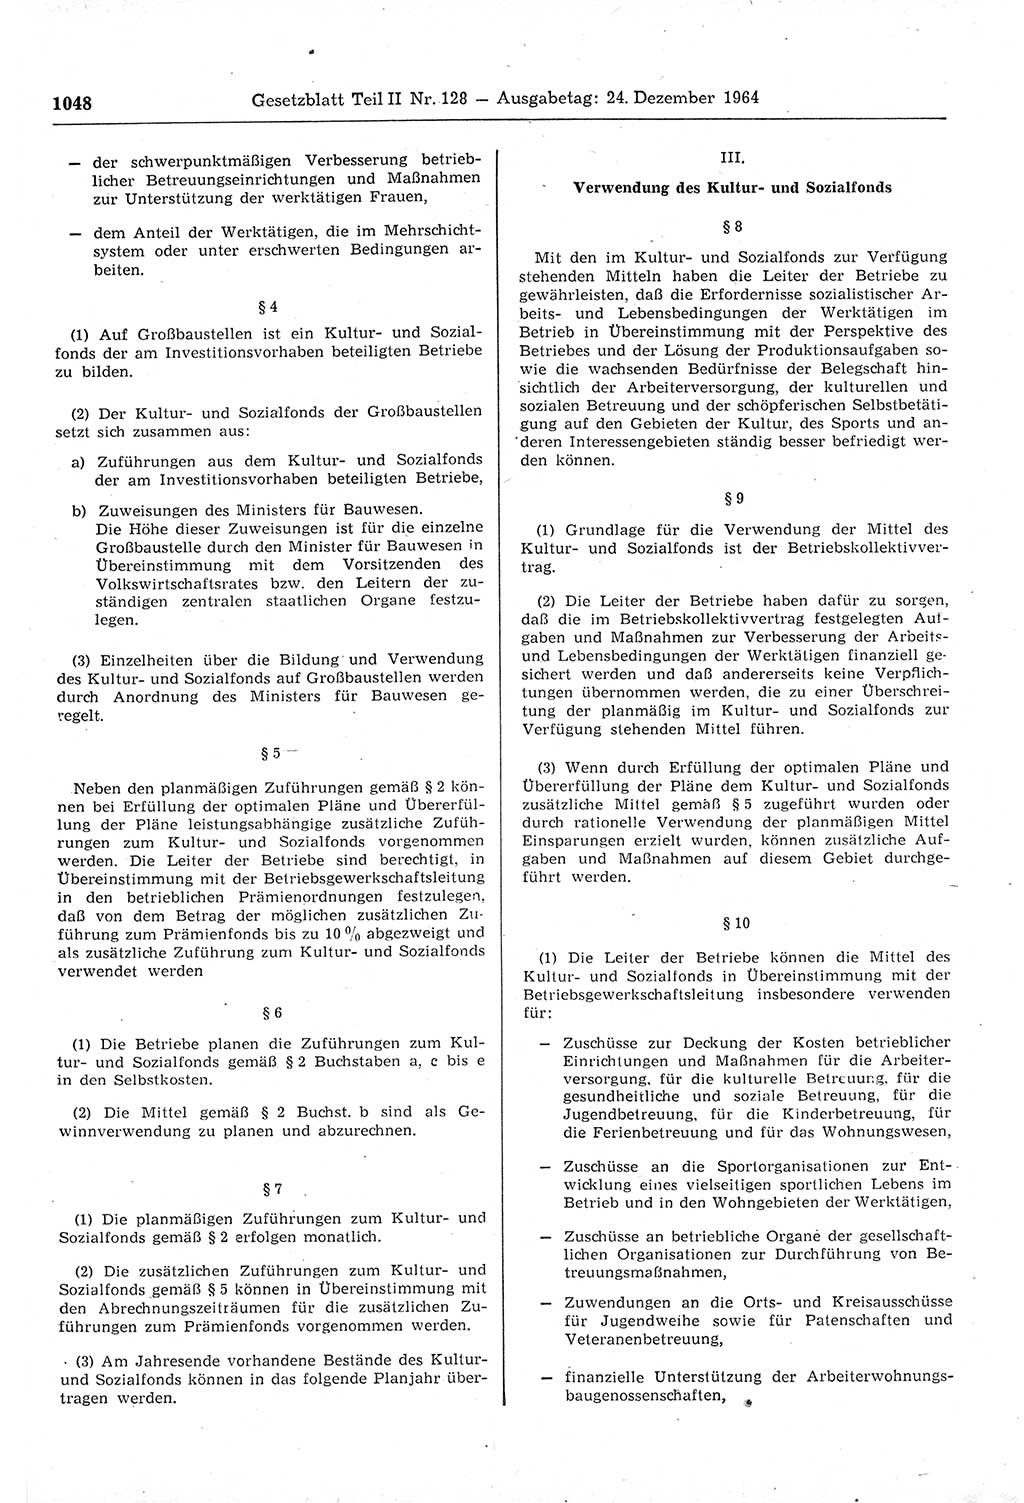 Gesetzblatt (GBl.) der Deutschen Demokratischen Republik (DDR) Teil ⅠⅠ 1964, Seite 1048 (GBl. DDR ⅠⅠ 1964, S. 1048)